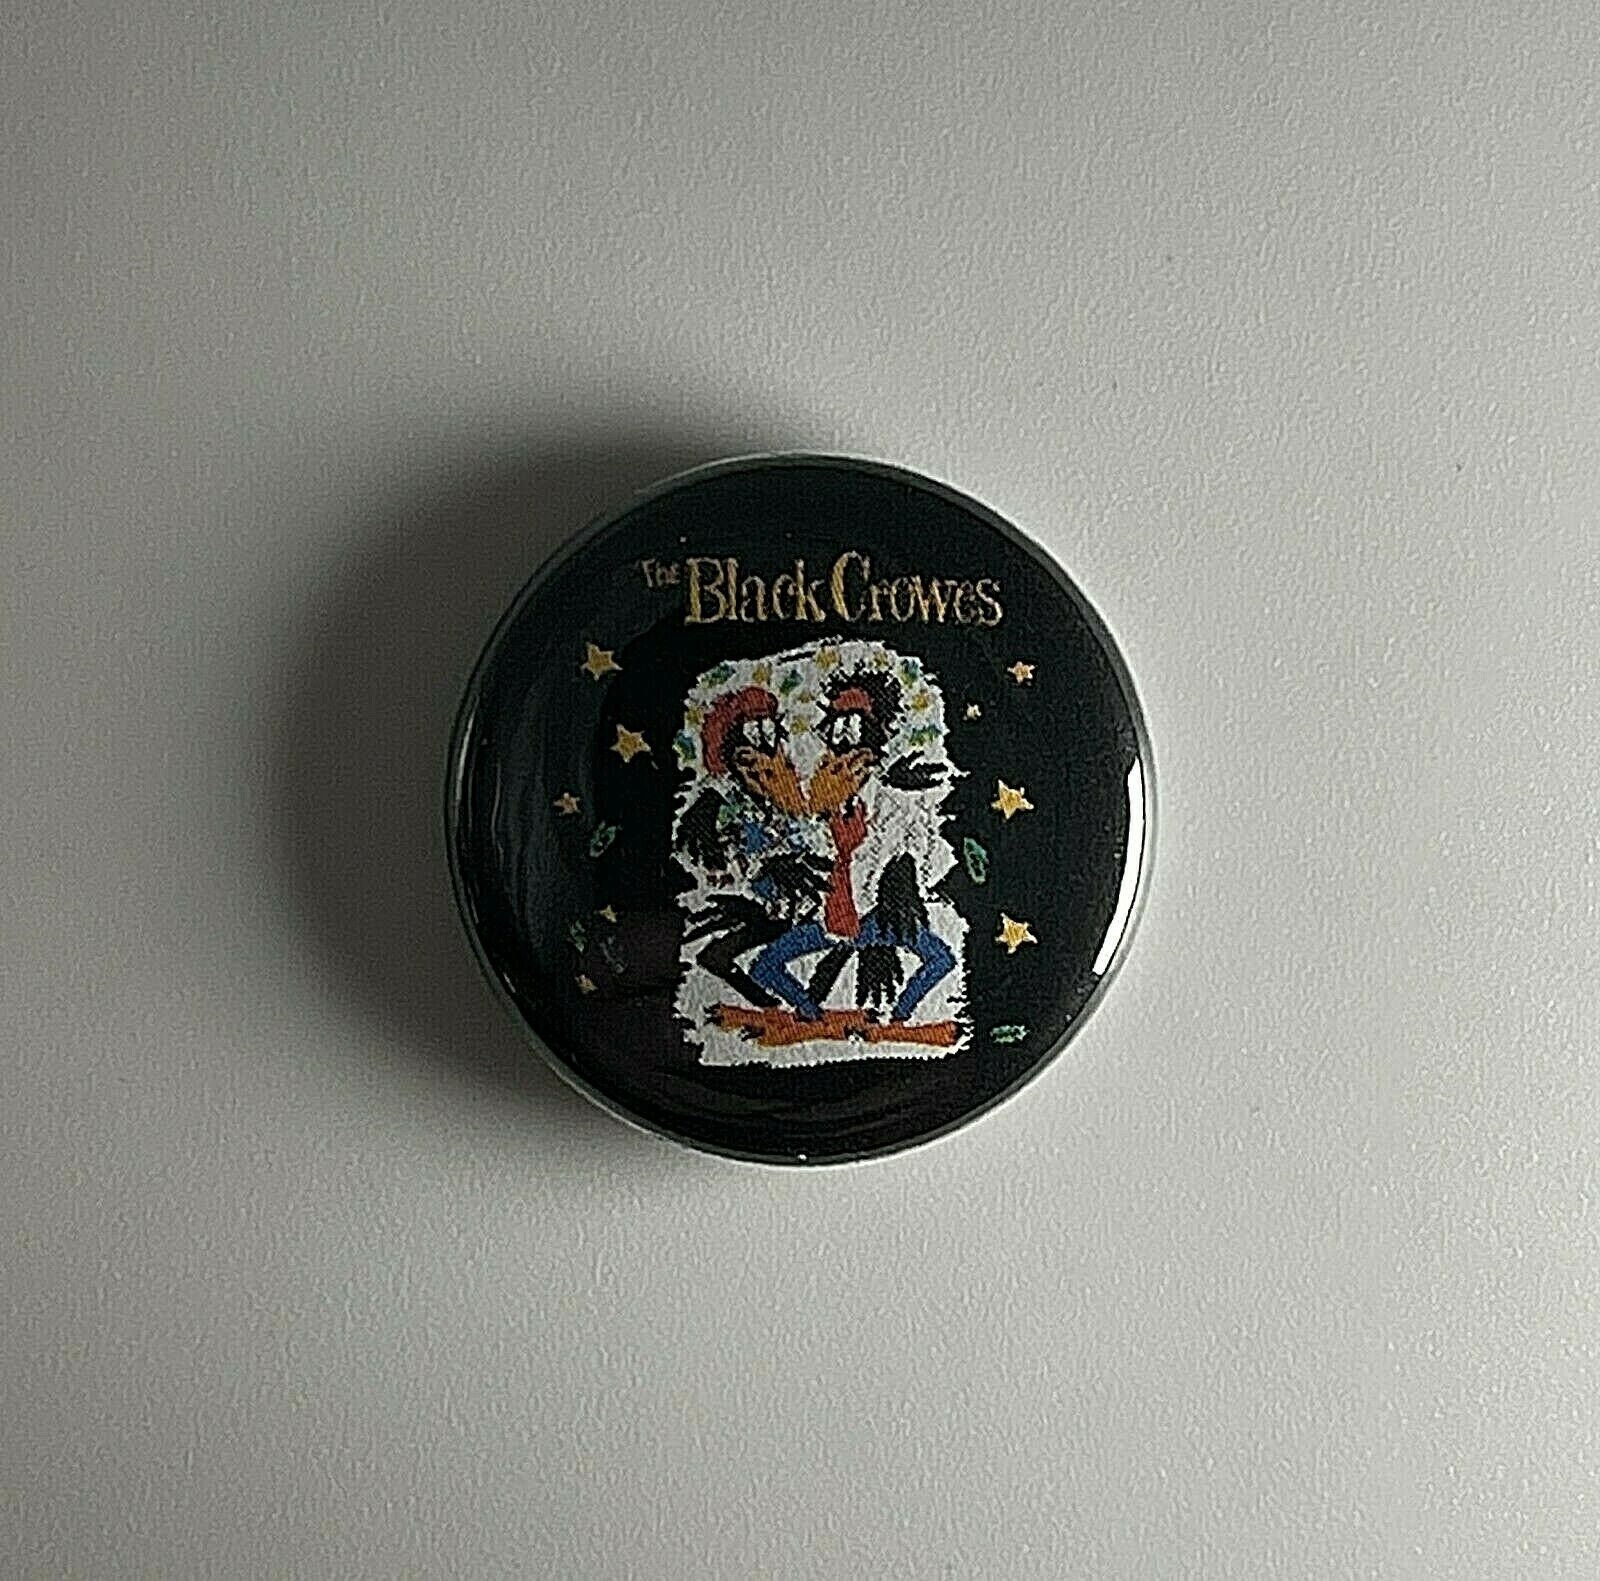 The Black Crowes Hard To Handle 1 "Button B019B Pin Badge von Heavylowmerchandise